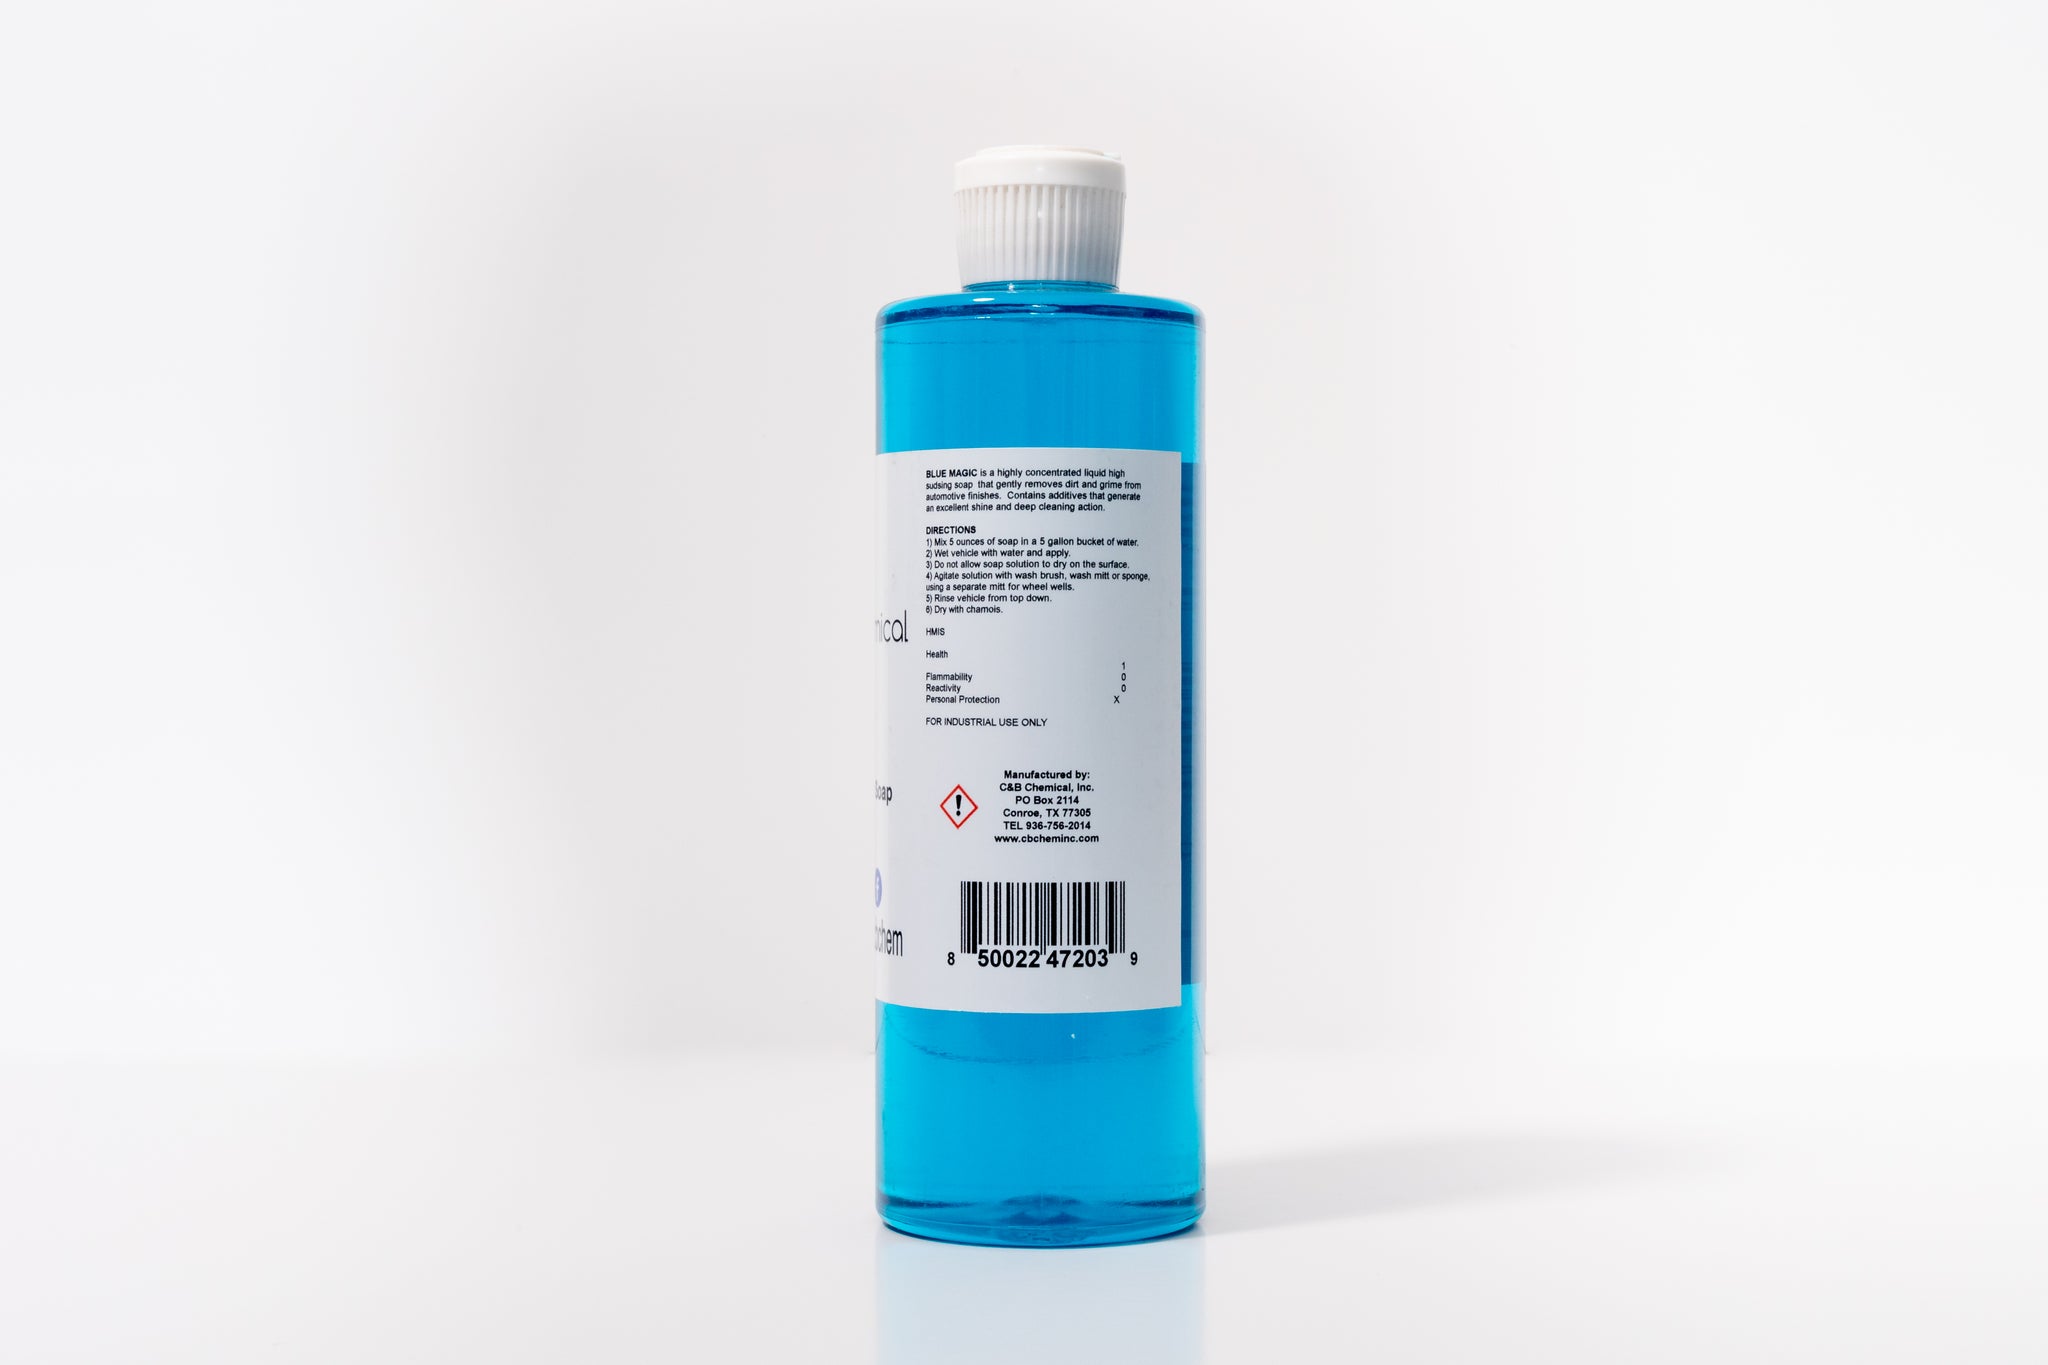 Blue Magic Soap - C & B Chemical, Inc